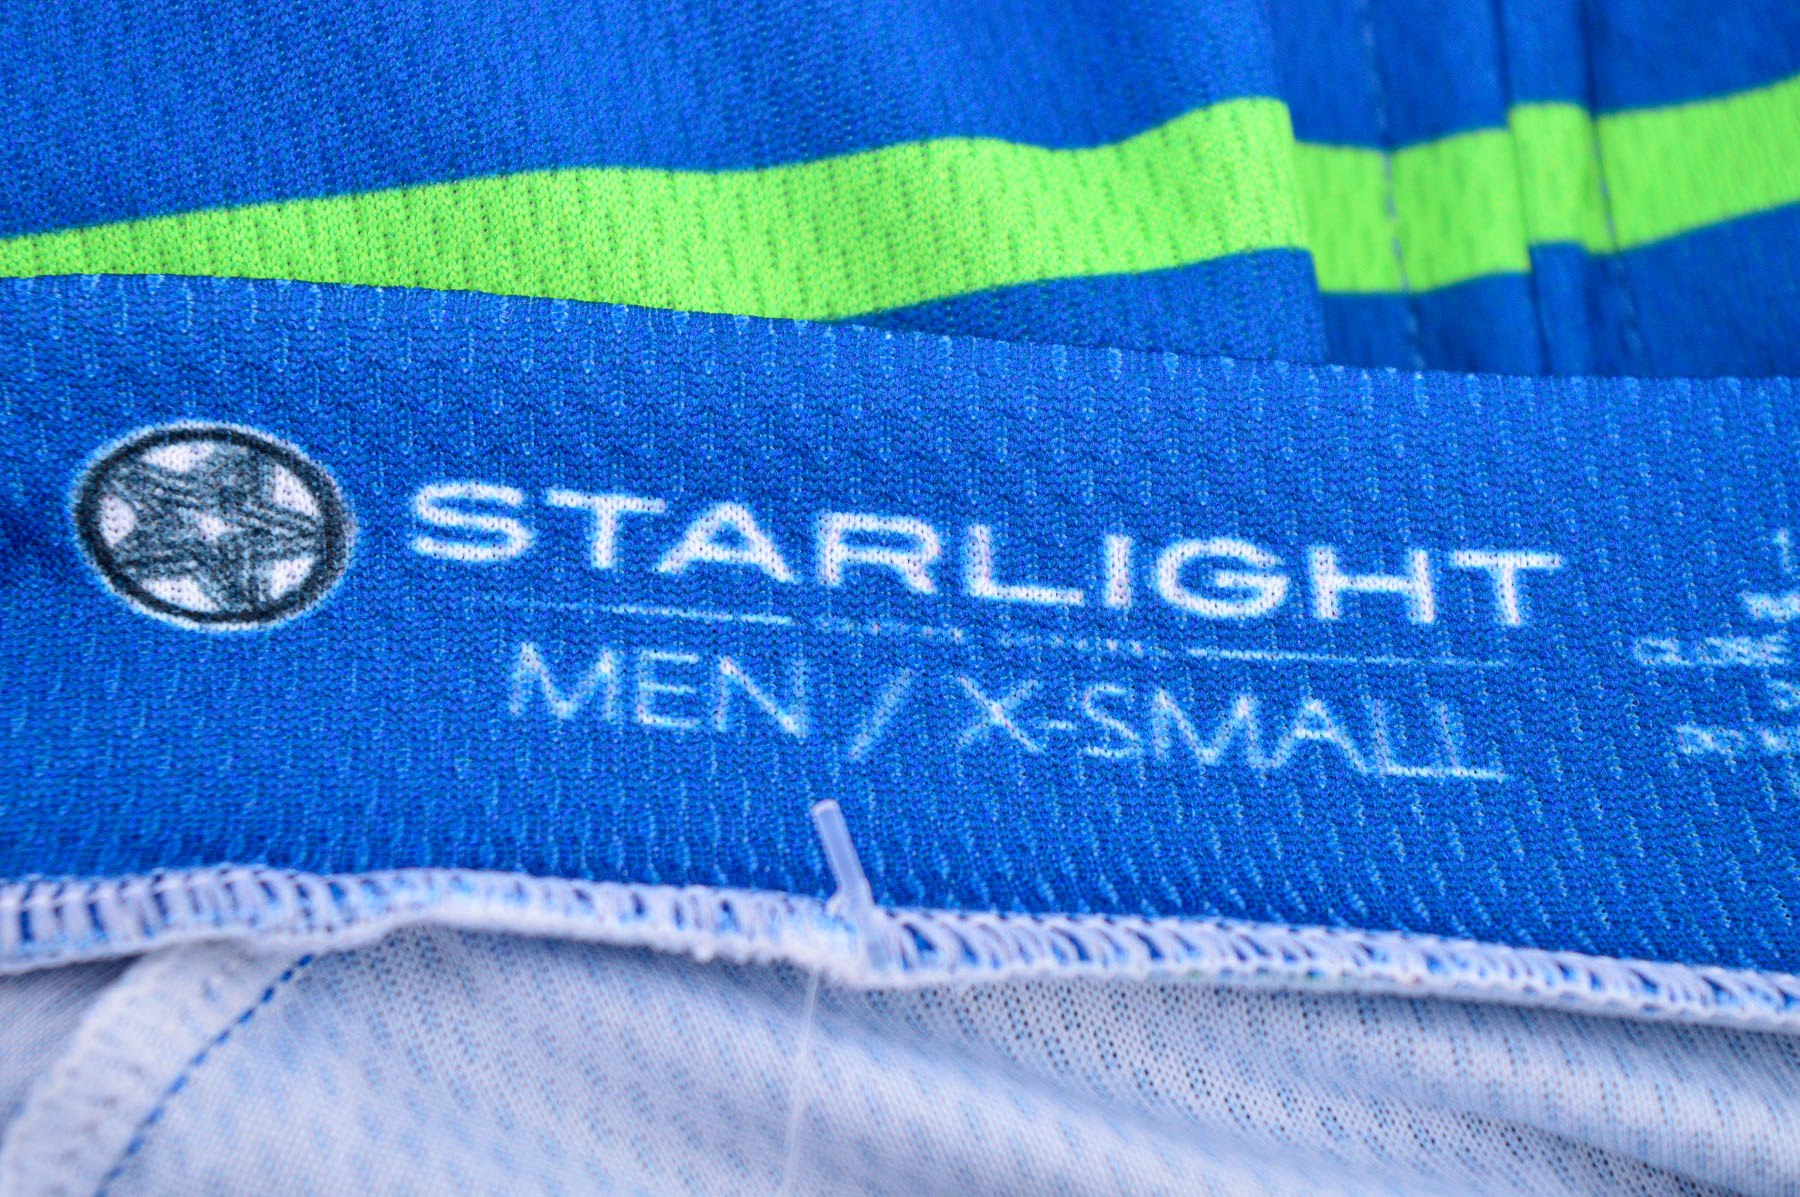 Męska koszulka rowerowa - STARLIGHT - 2